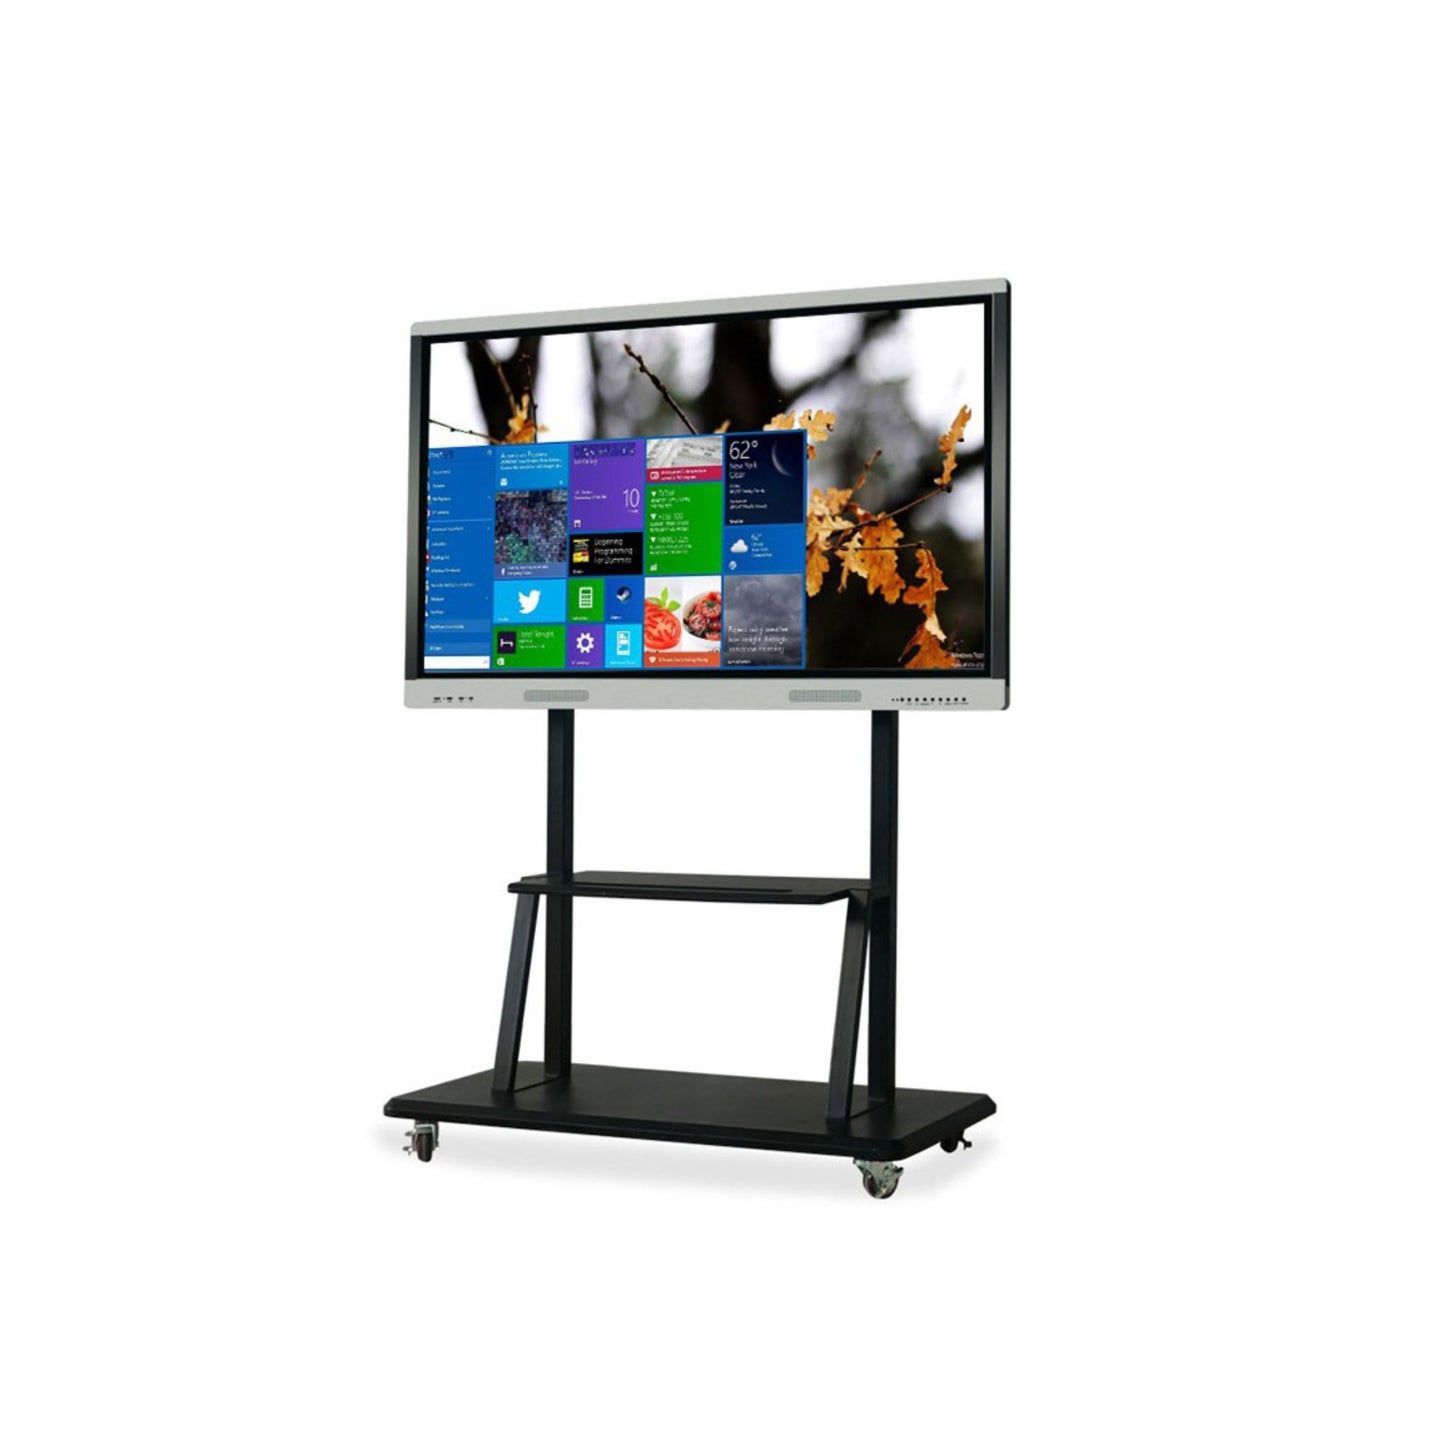 Skill Tech Economy Mobile Tv Cart With Av Component Shelf For 60"-86" Screen, SH 100 FS